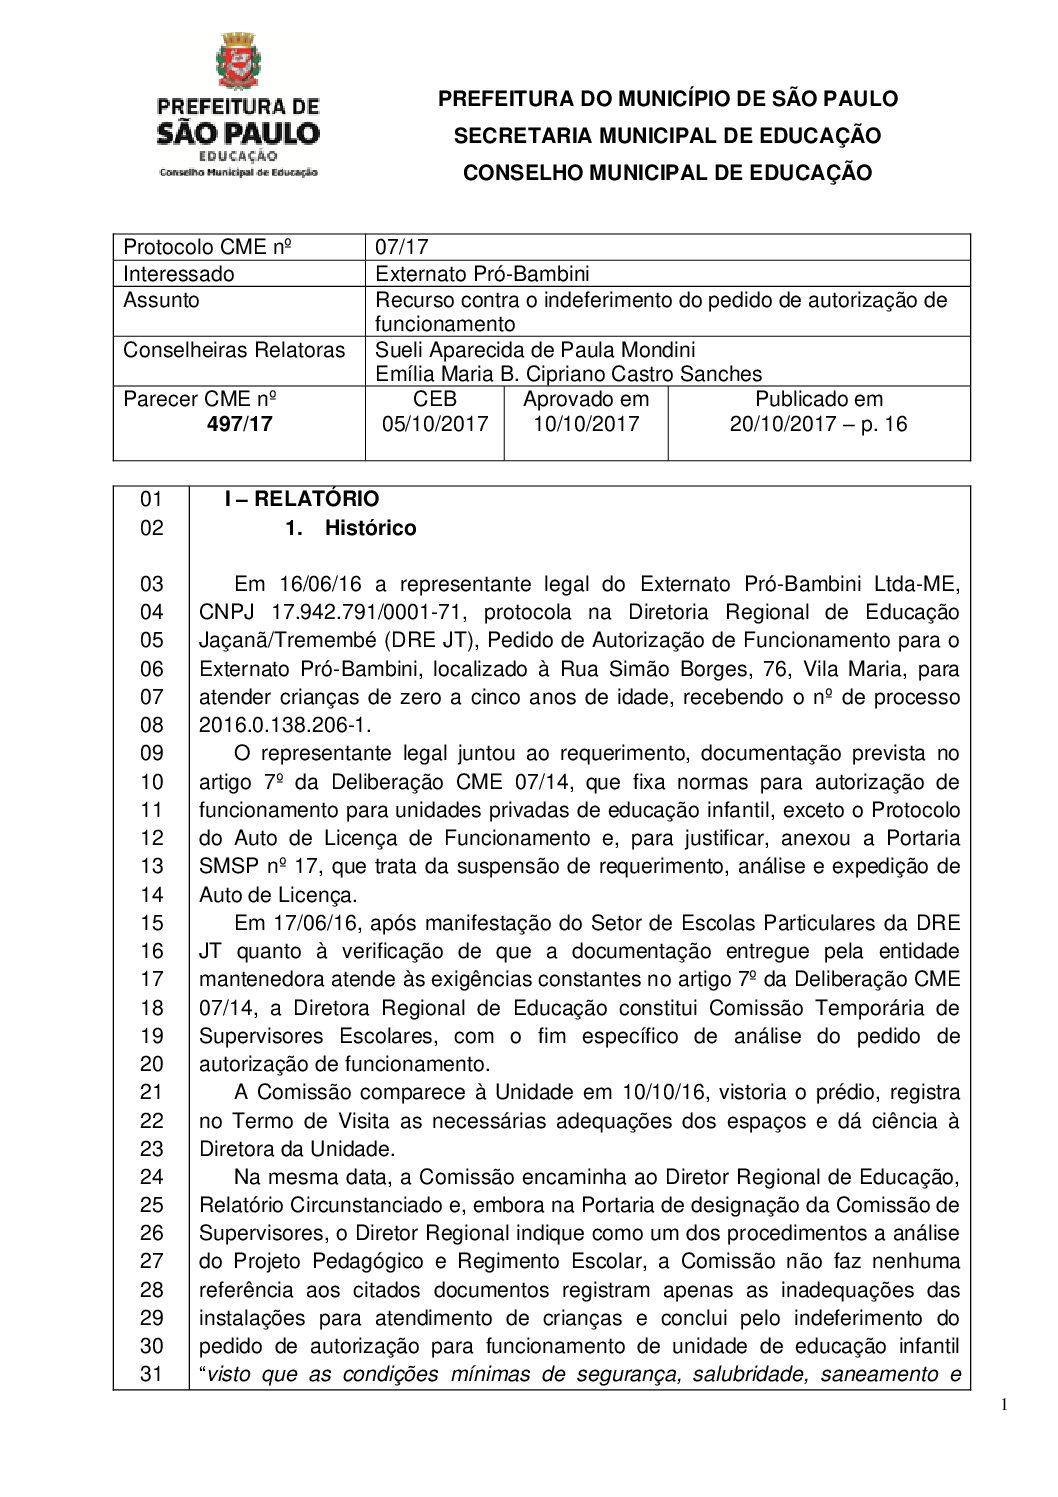 Parecer CME nº 497/2017 - Externato Pró-Bambini (DRE Jaçanã/Tremembé) - Recurso contra o indeferimento do pedido de autorização de funcionamento 